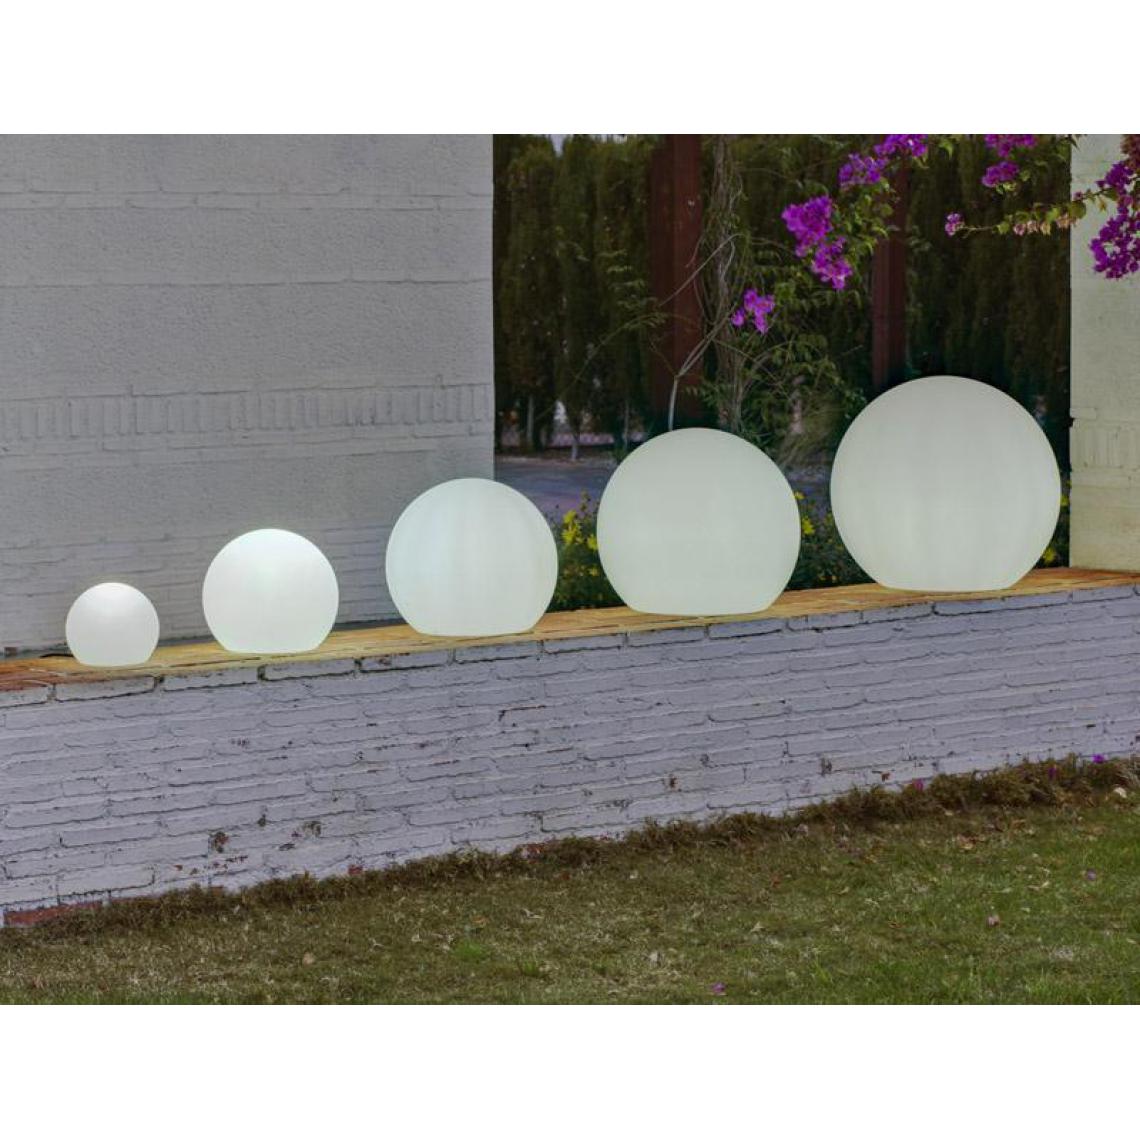 New Garden - Boule sphère lumineuse flottante NEWGARDEN 30cm outdoor extérieur Solaire+Batterie rechargeable LED/RGB - Eclairage solaire